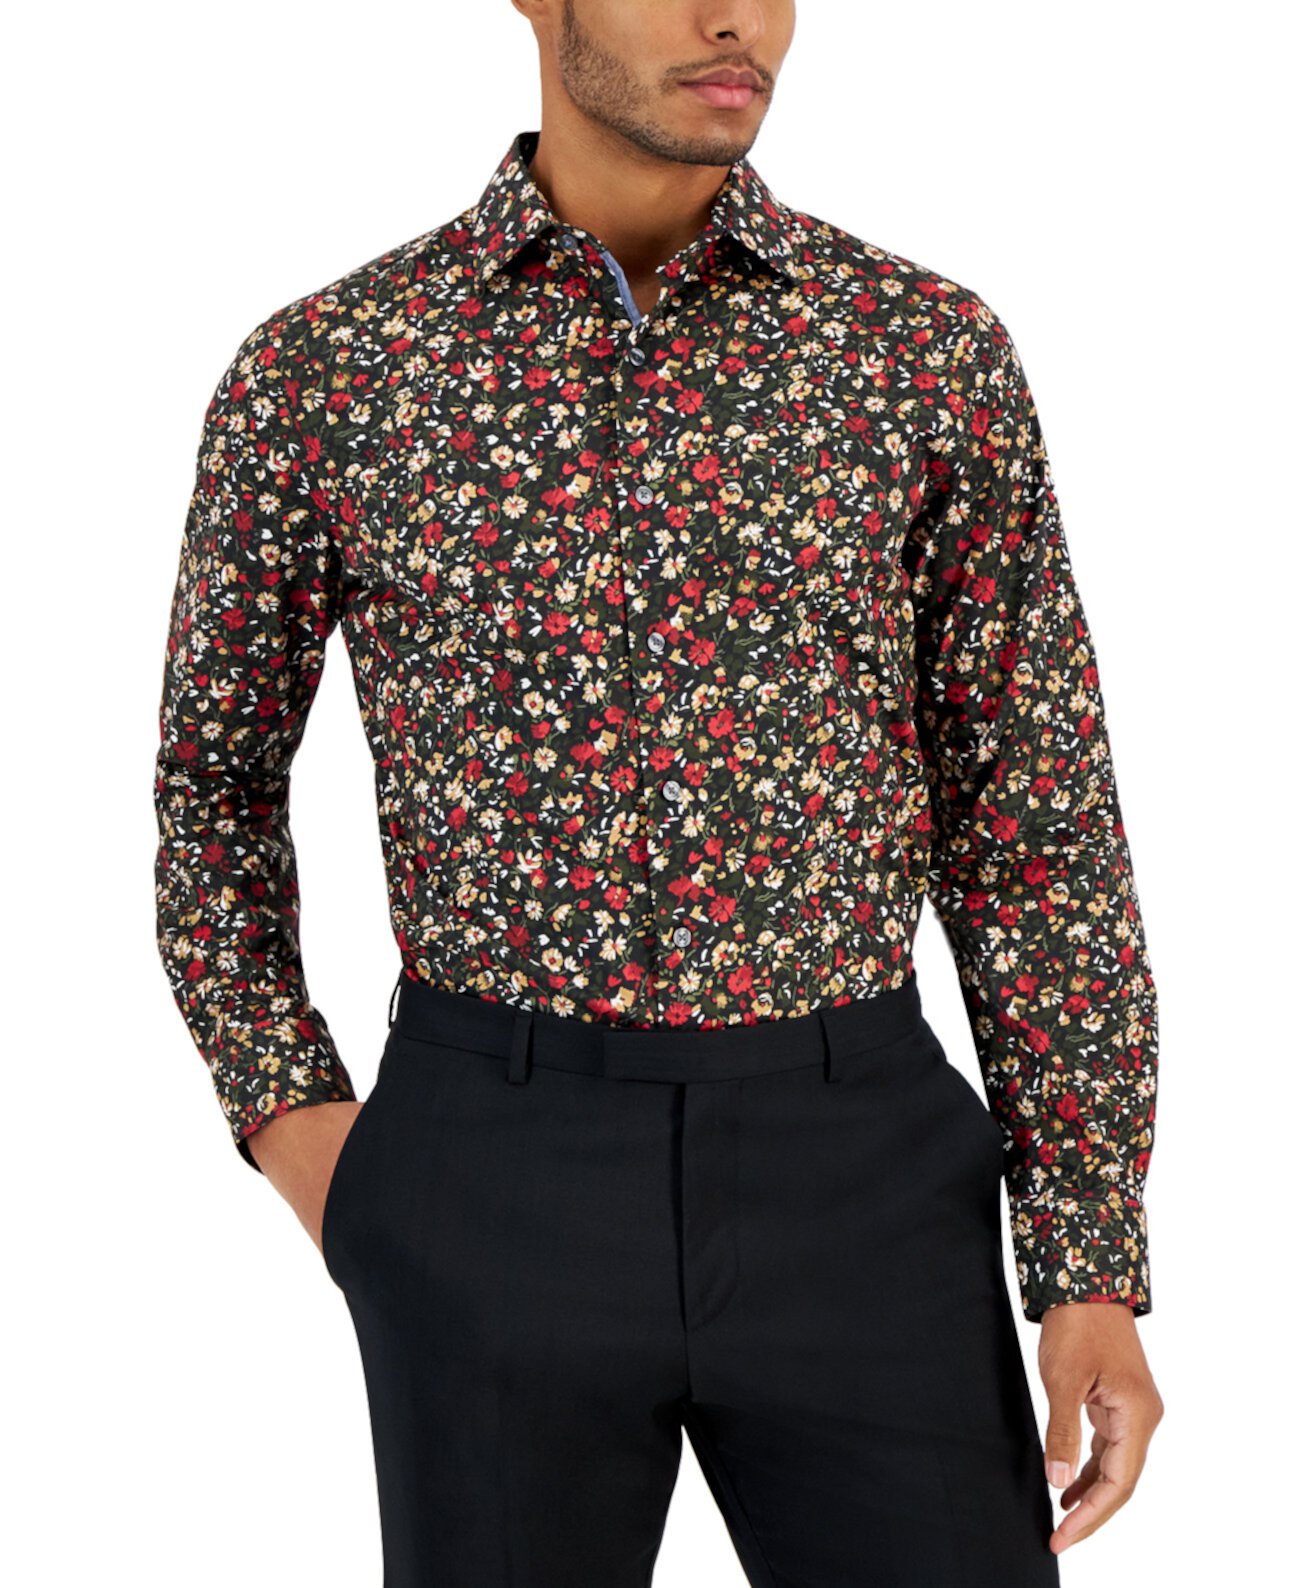 Мужская классическая рубашка узкого кроя с цветочным принтом, созданная для Macy's Bar III